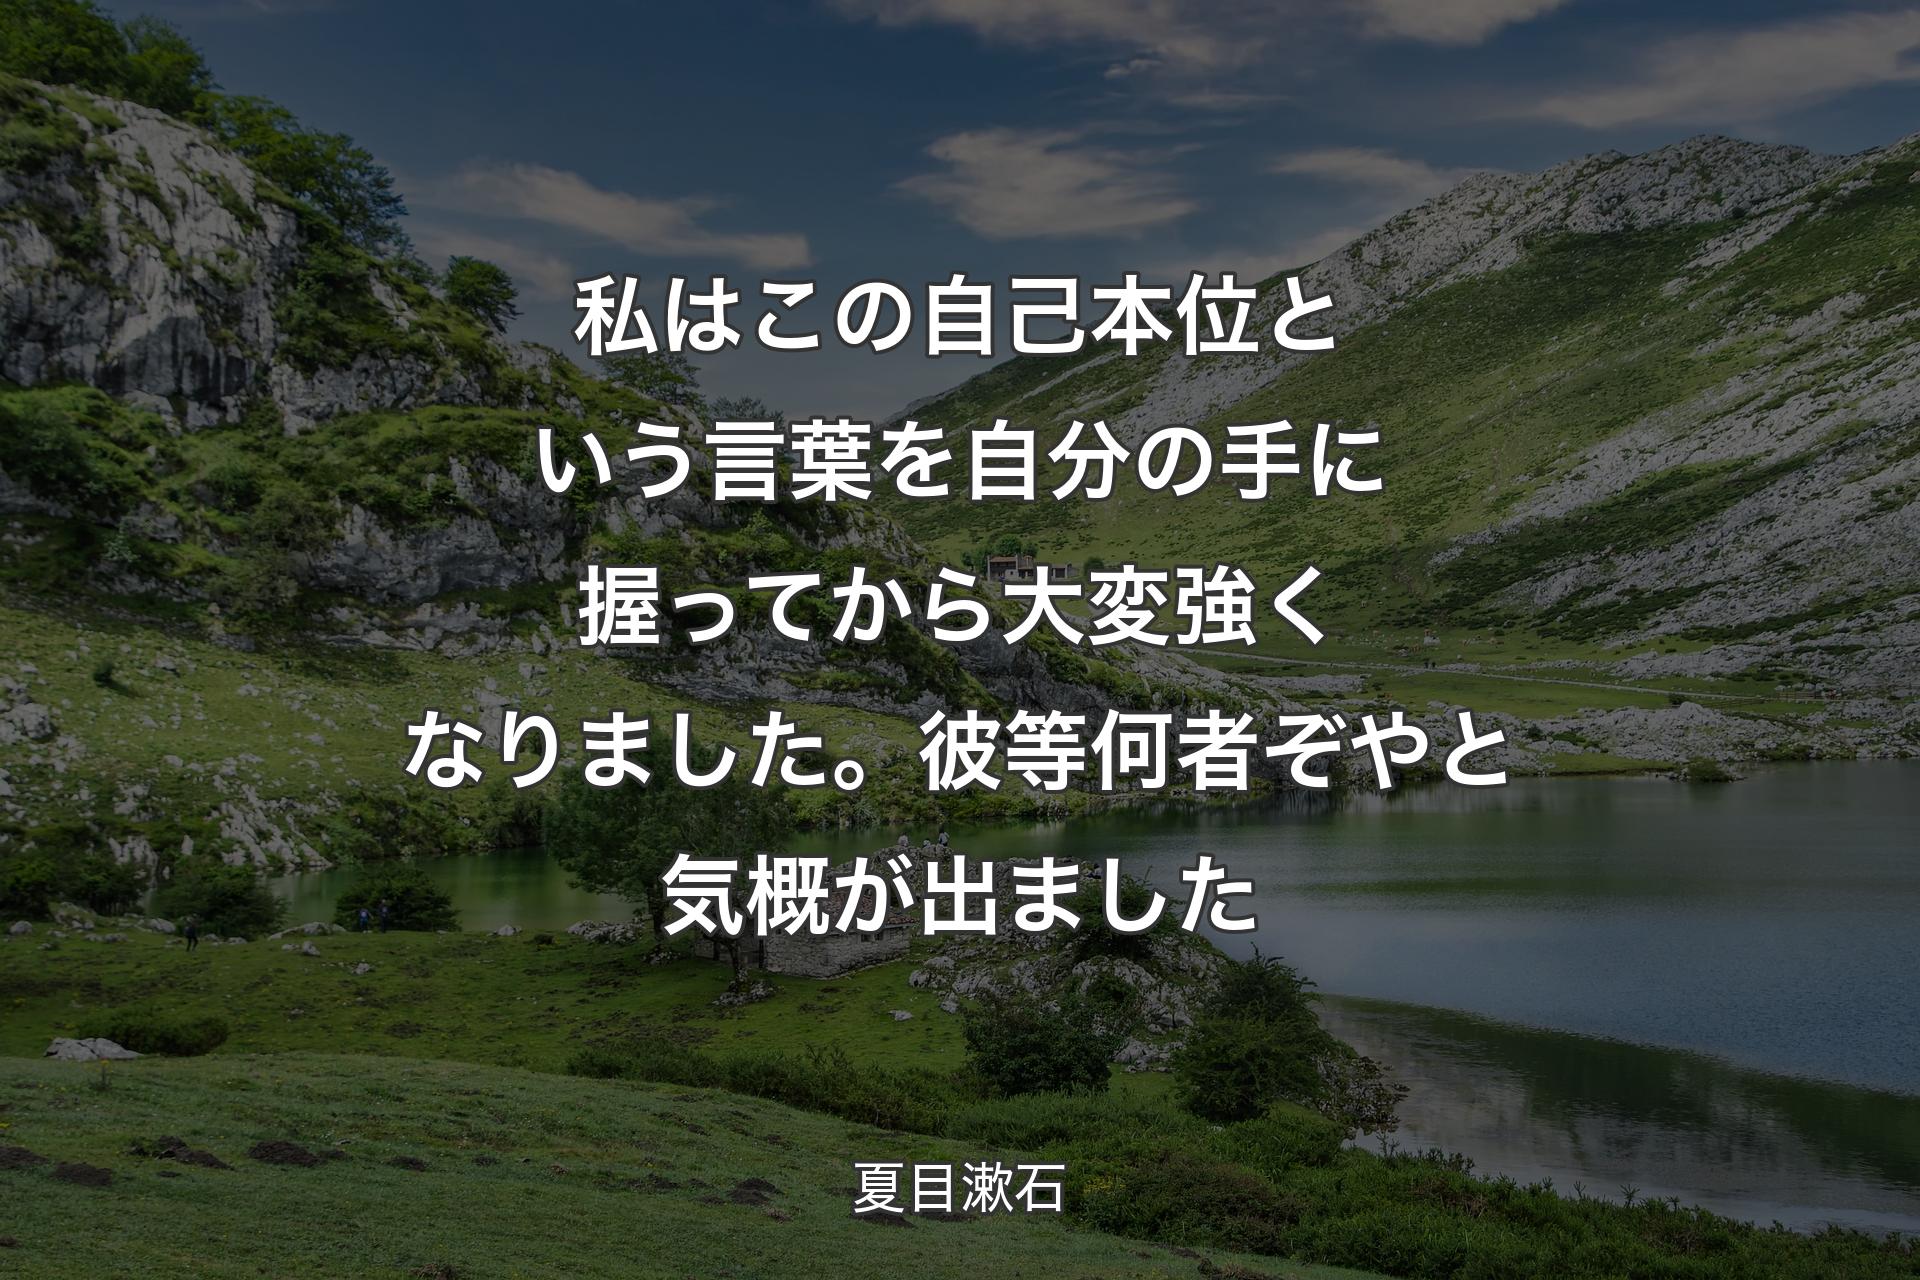 【背景1】私はこの自己本位という言葉を自分の手に握ってから大変強くなりました。彼等何者ぞやと気概が出ました - 夏目漱石